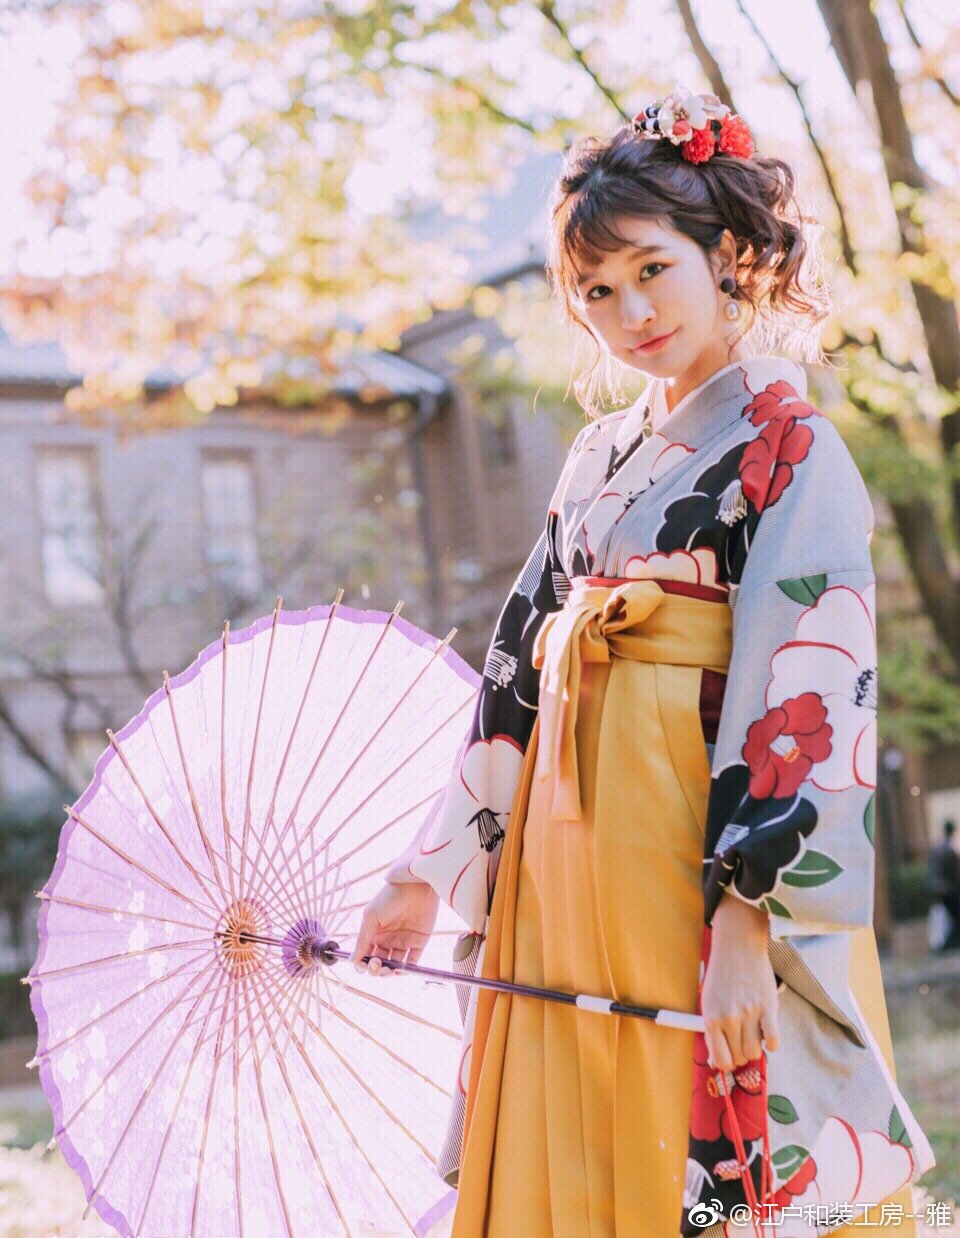 袴 是日本和服的一种下裳 日本最浪漫时代的代名词 大正时代